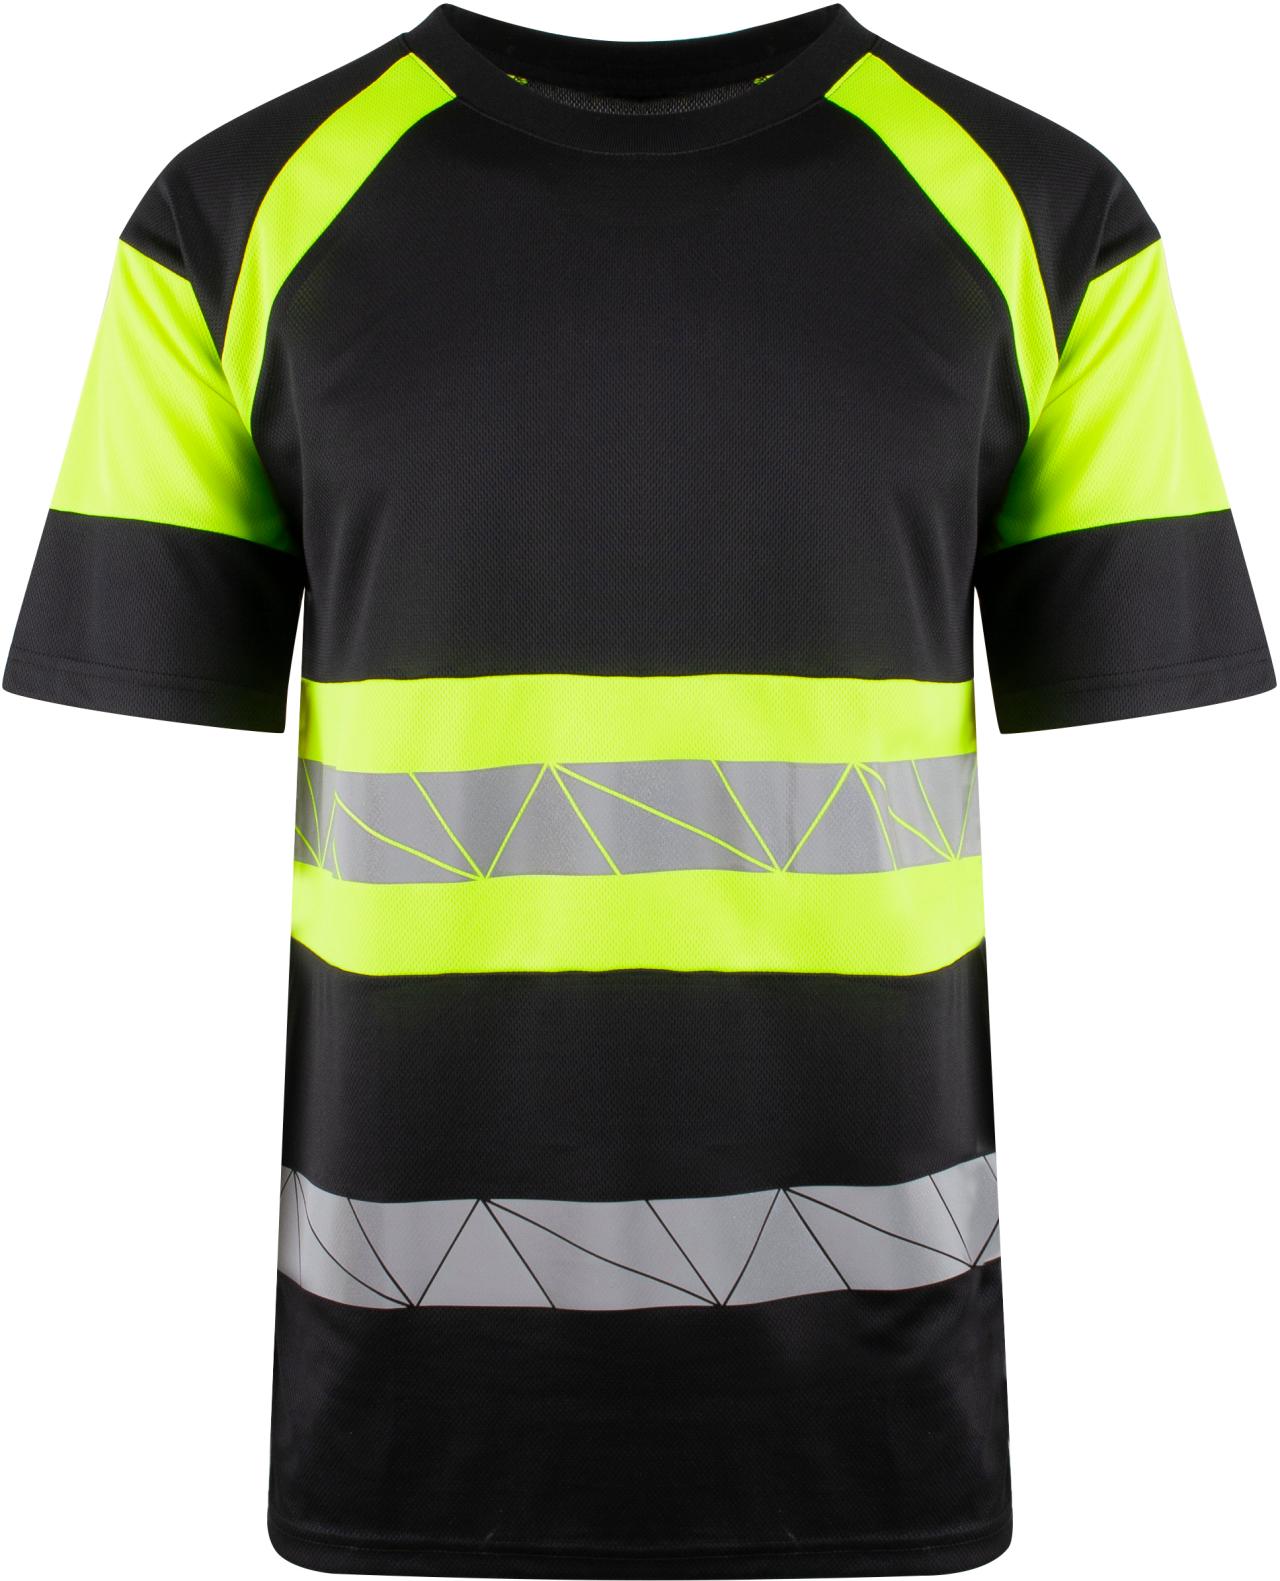 4710 Brande T-Skjorte Sort/Safety Gul